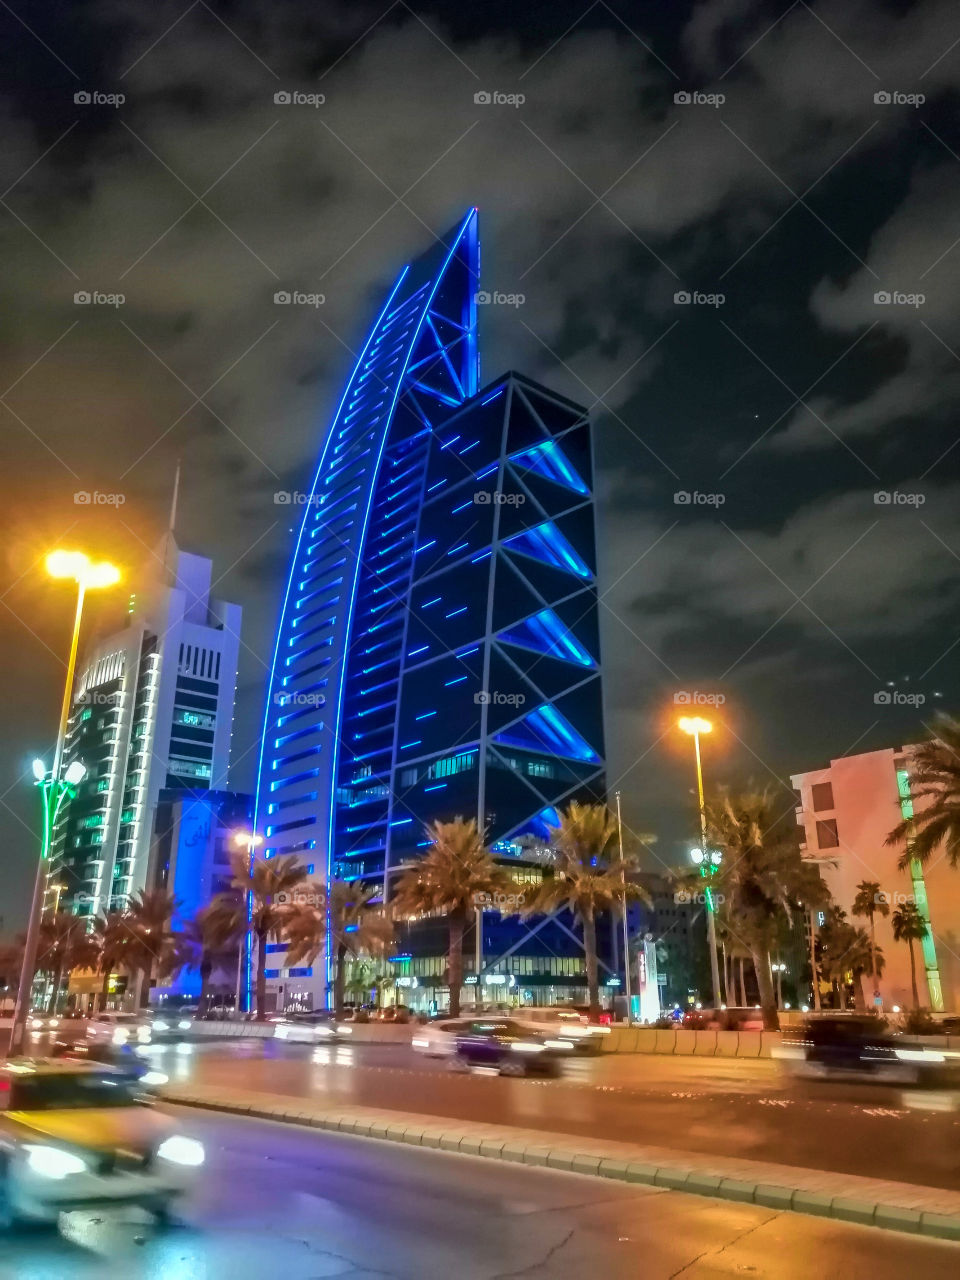 Downtown Riyadh, King Fahd Road at night